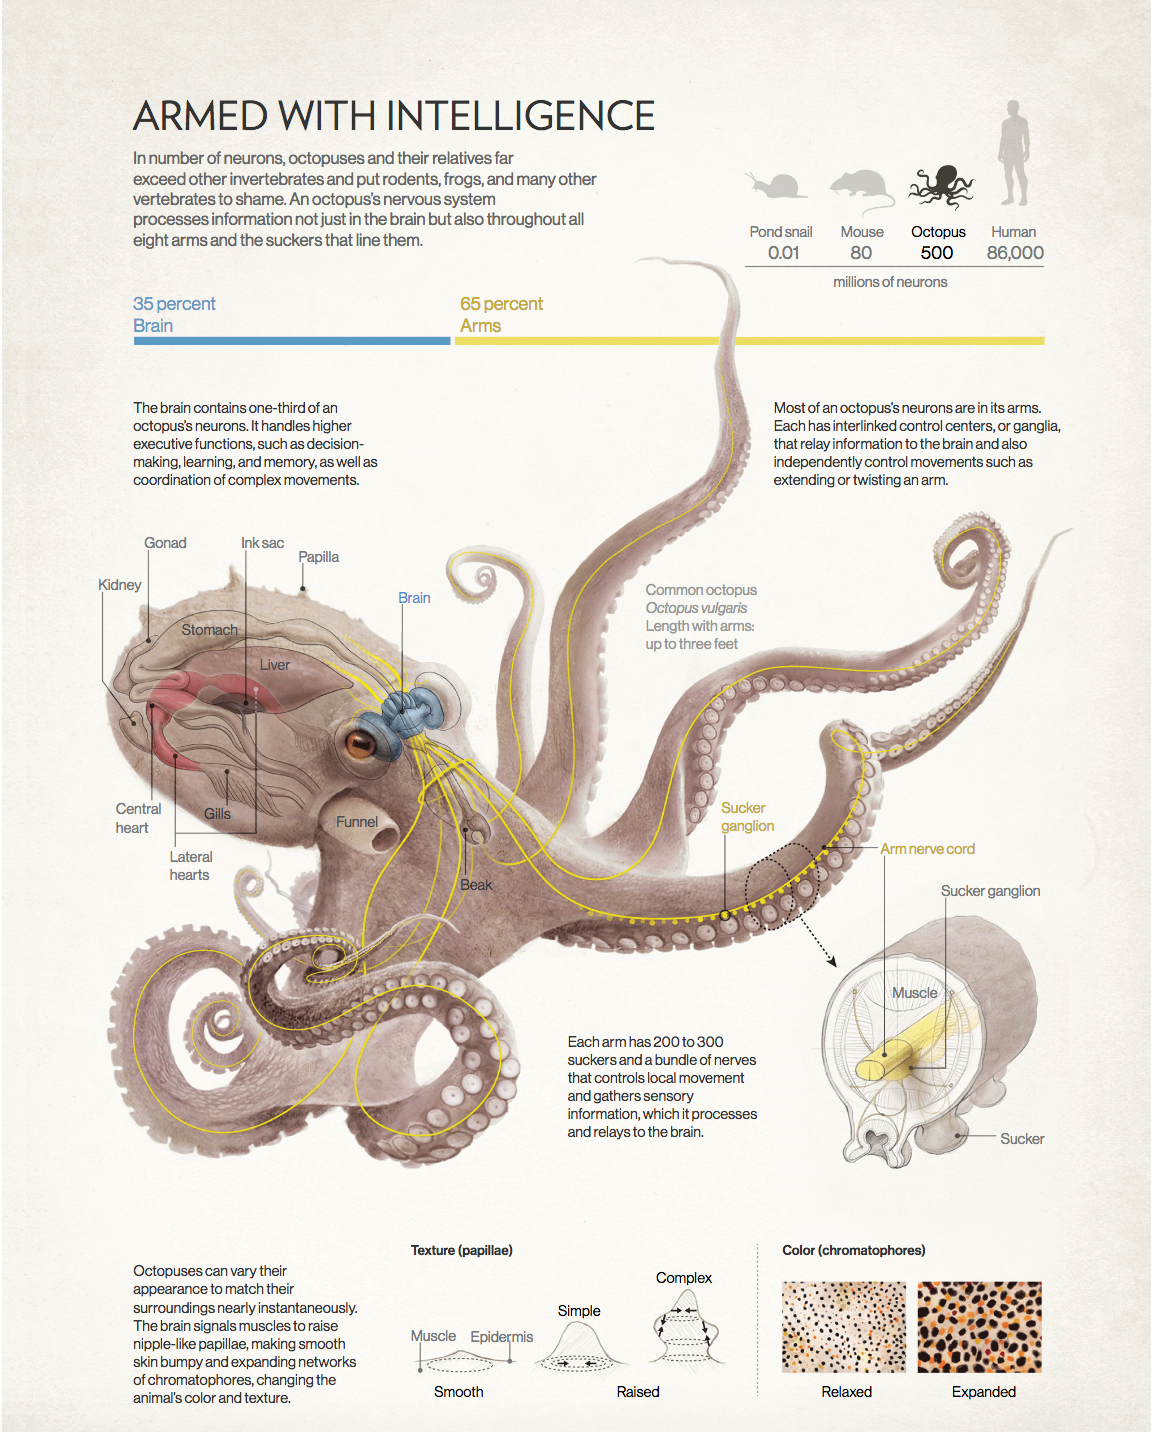 现实版异形,9个大脑3个心脏,章鱼为什么还是进化得不如人?